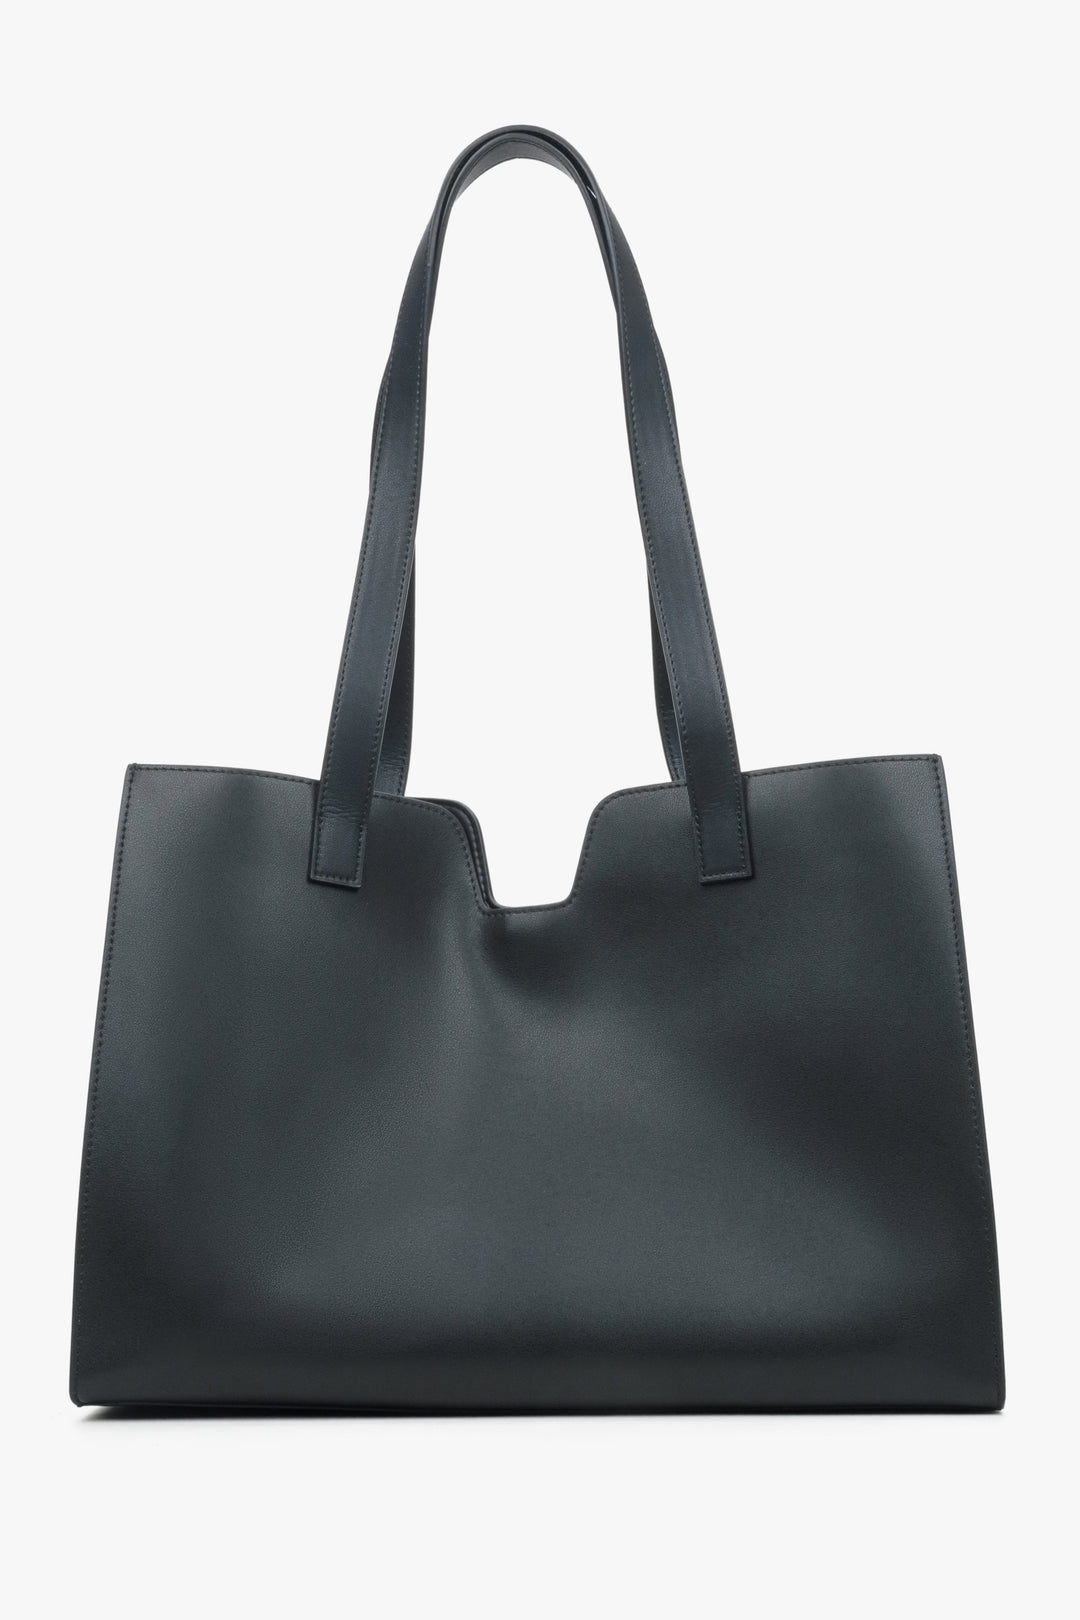 Women's black leather shopper bag by Estro.